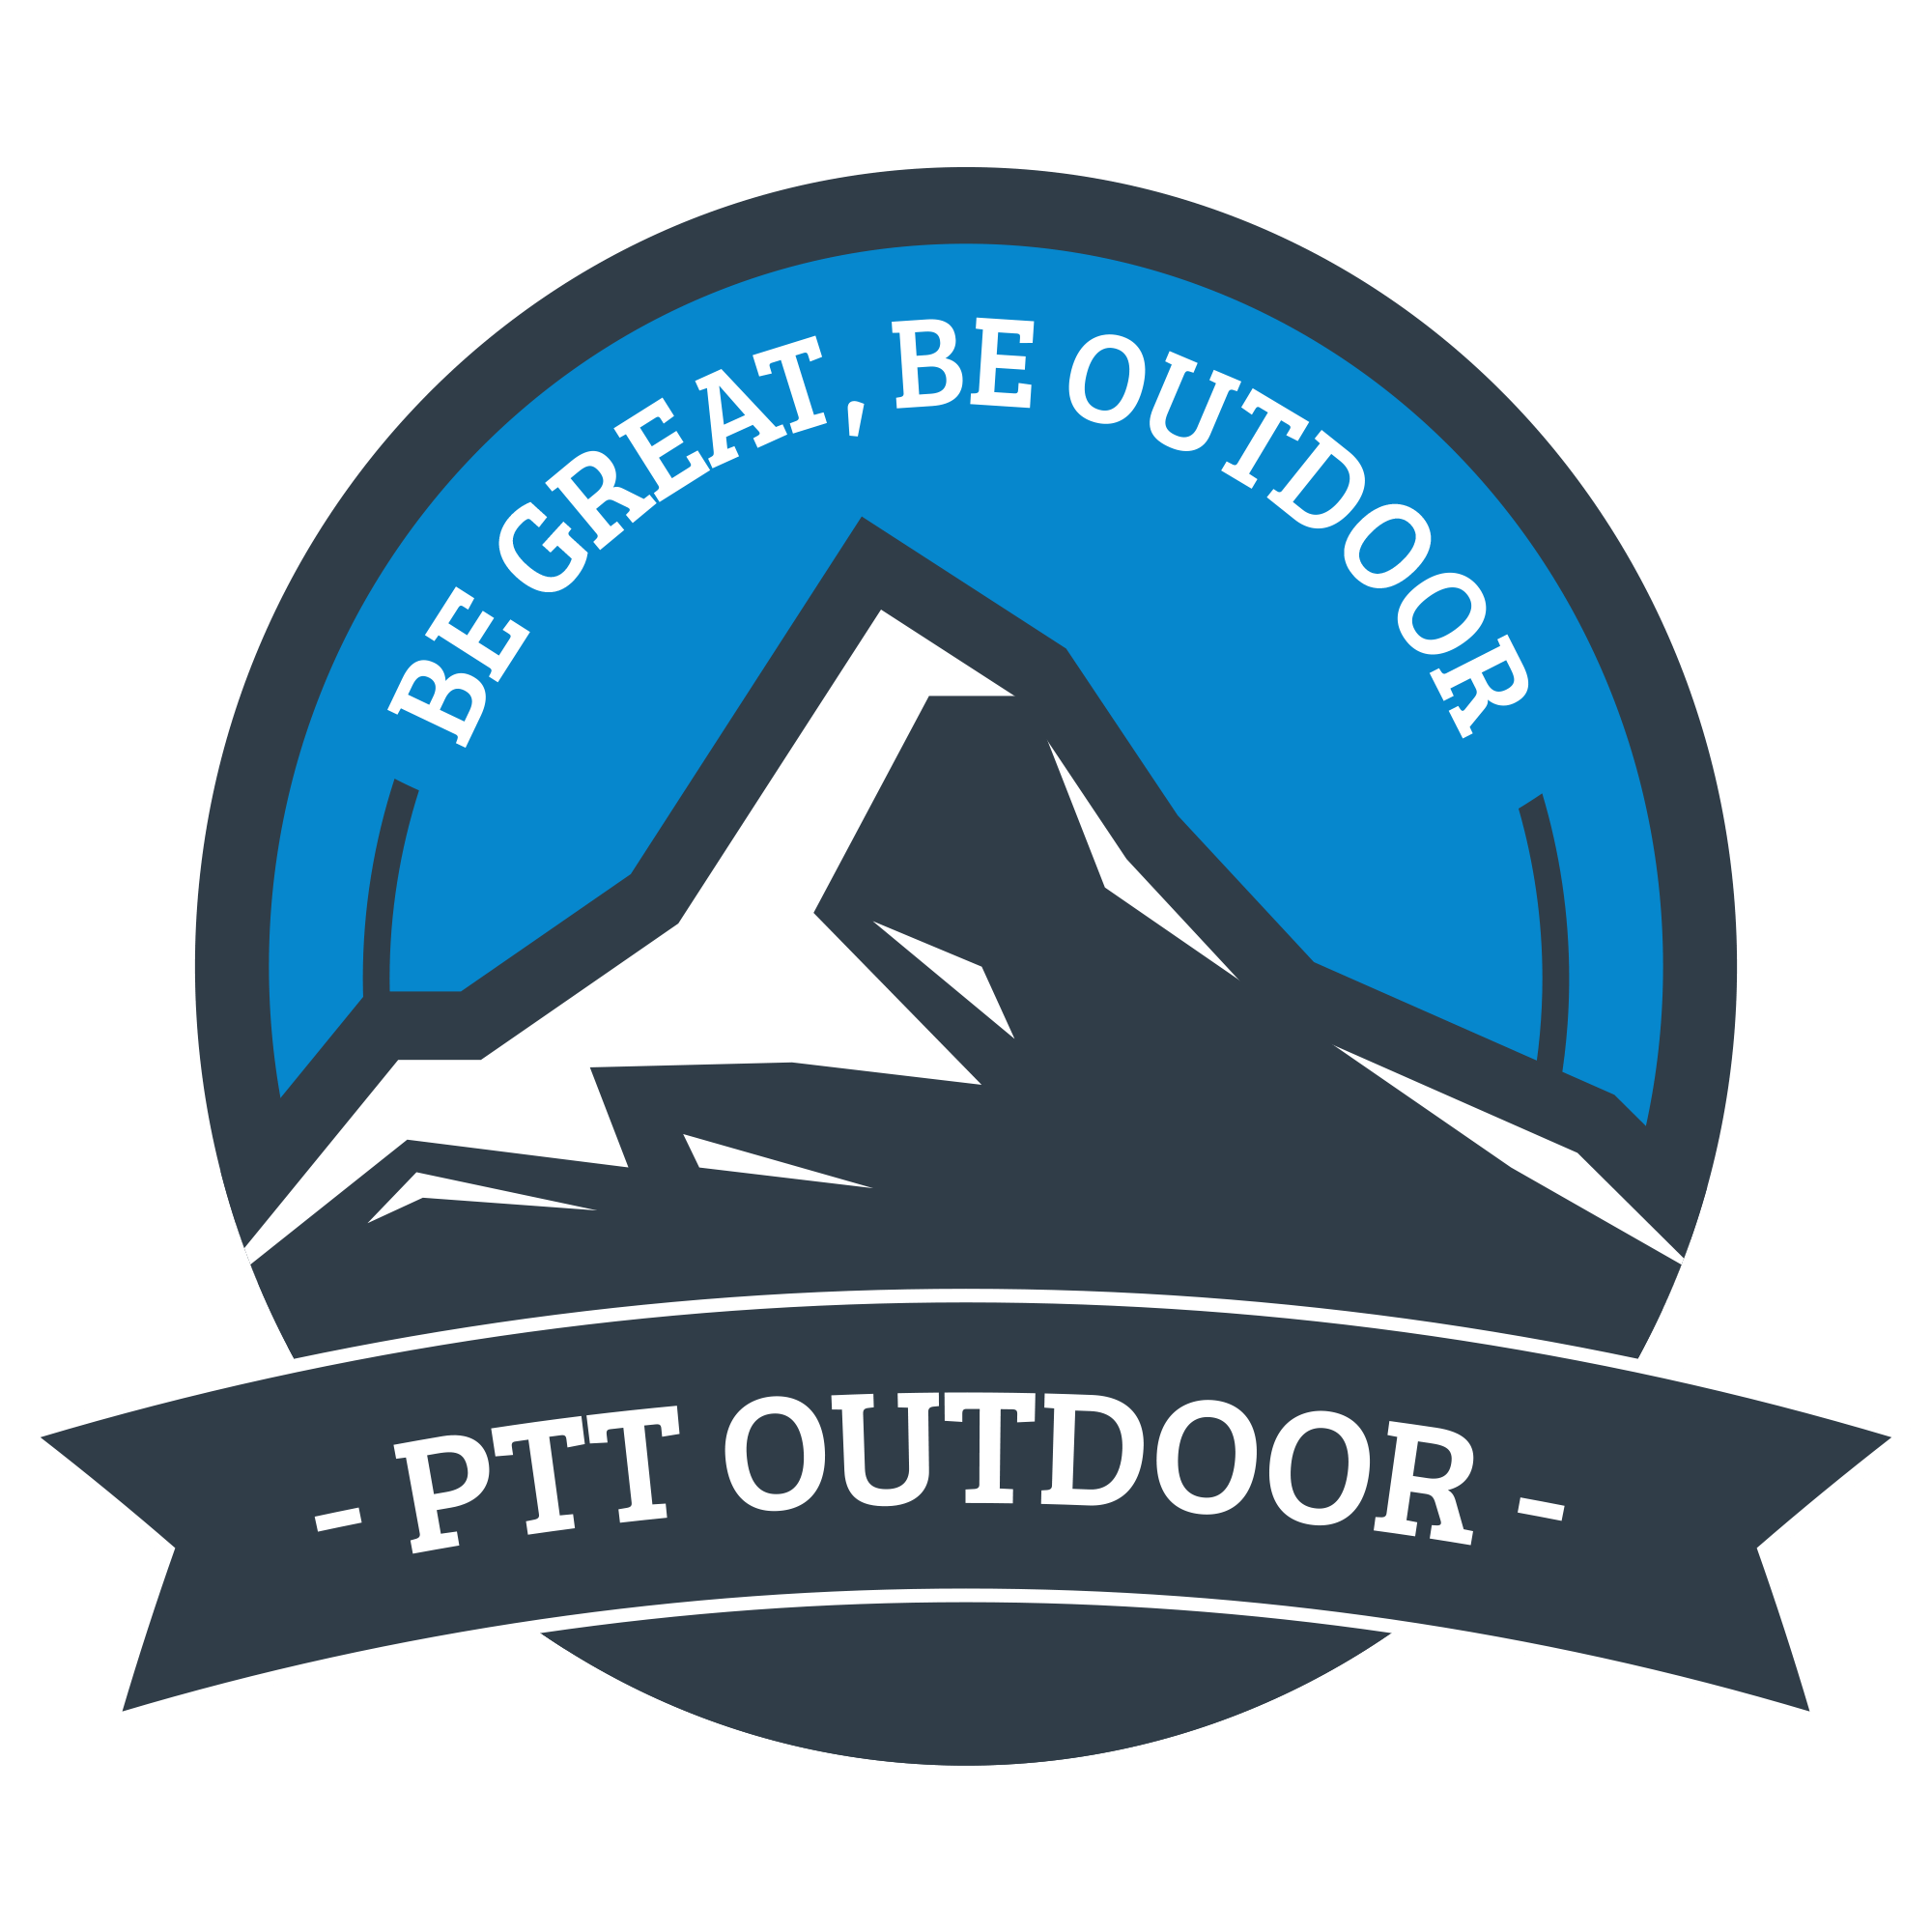 PTT Outdoor Charity Program, PTT Outdoor, 2000 x 2000 logo,